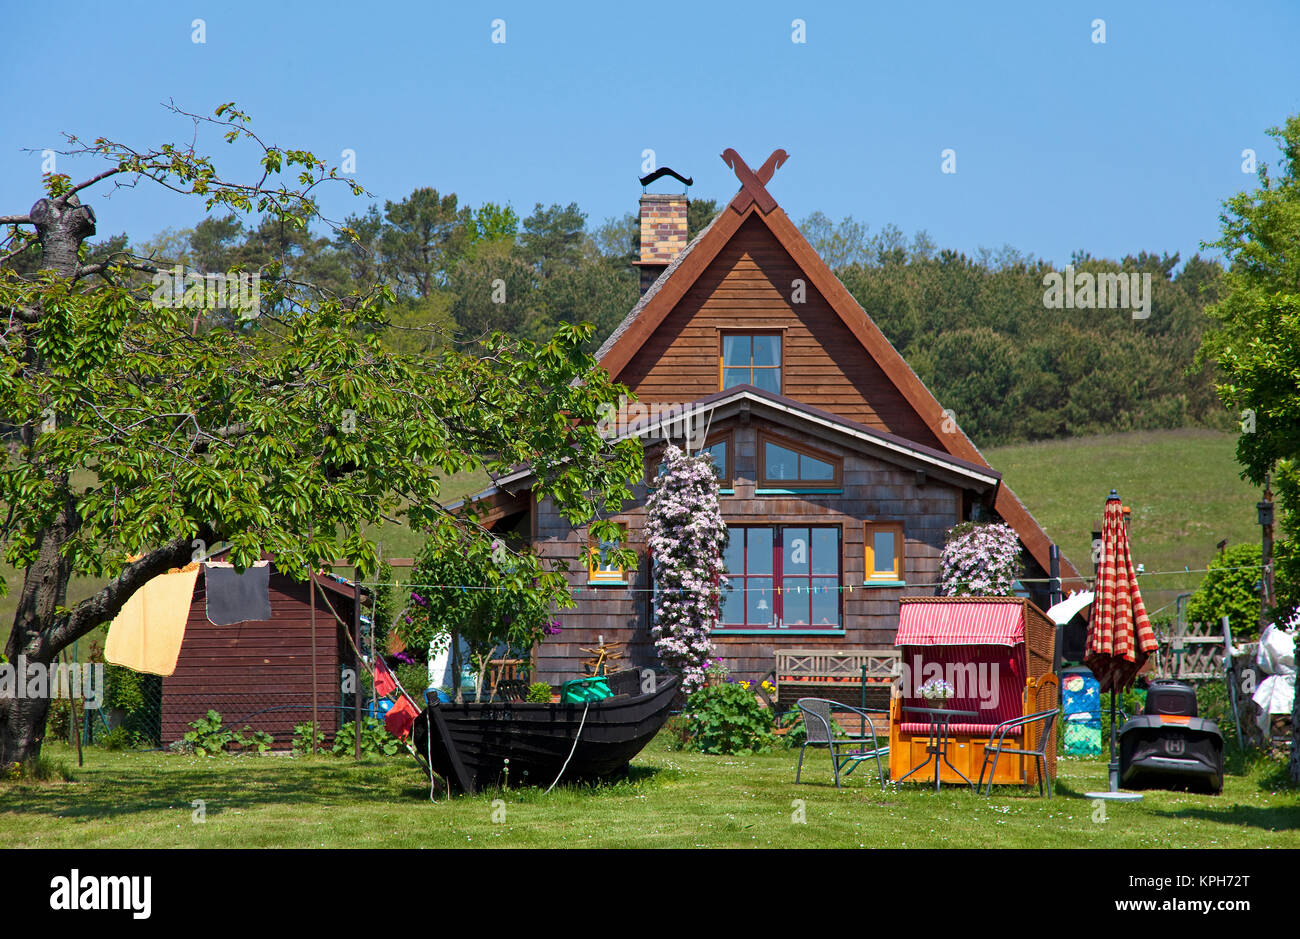 Maison en bois au toit de chaume avec jardin idyllique, Gross Zicker, Ruegen island, Mecklembourg-Poméranie-Occidentale, de la mer Baltique, l'Allemagne, de l'Europe Banque D'Images